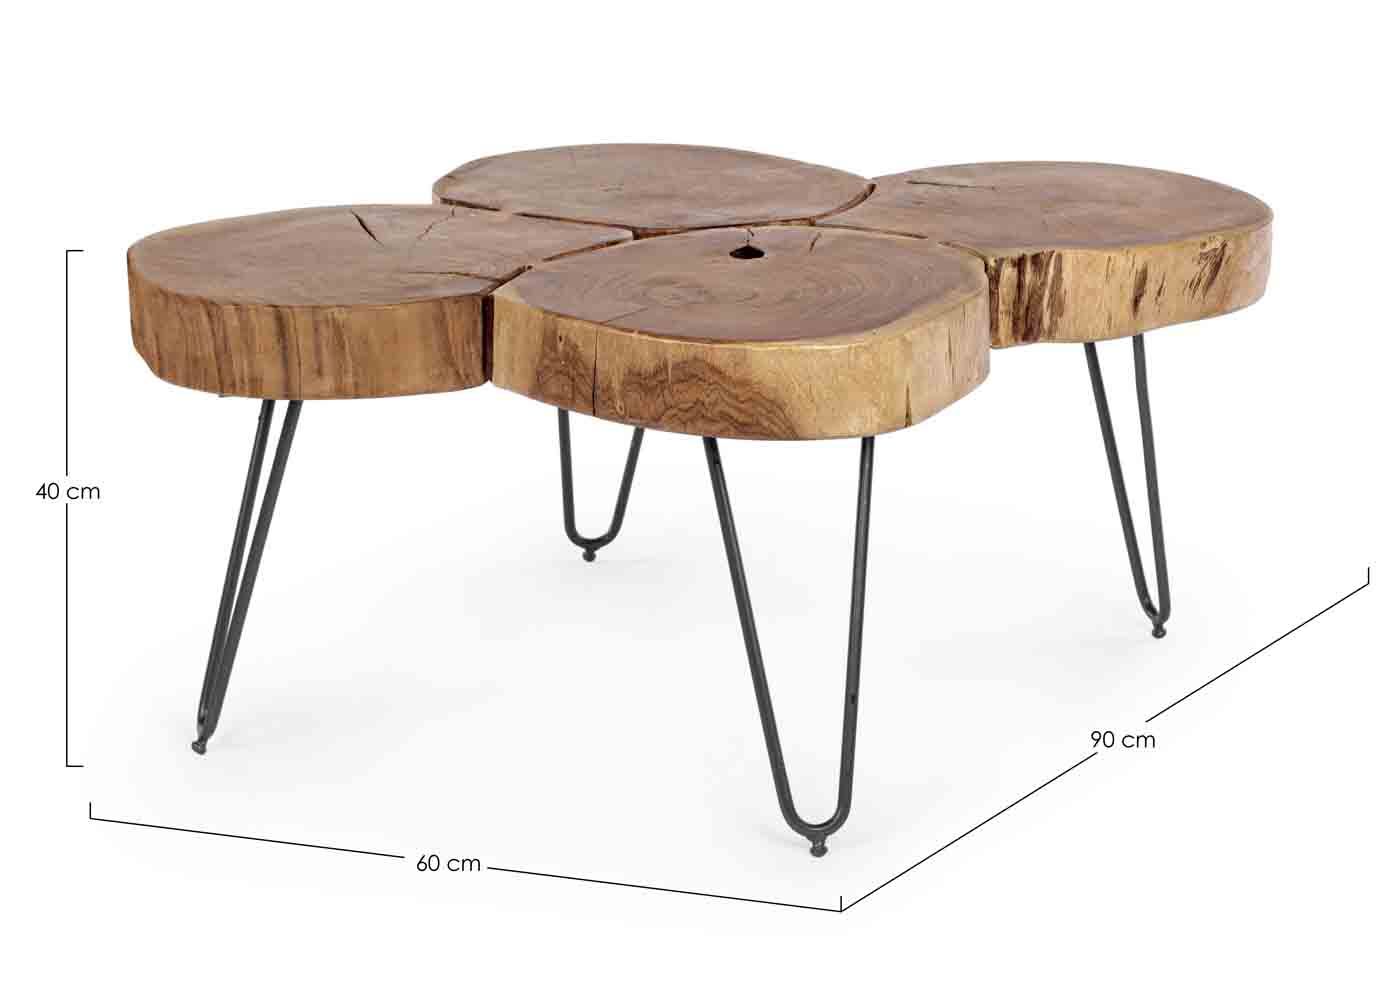 Der Couchtisch Orbital wurde aus original Teilen von Akazienholz gefertigt, dies verleiht dem Tisch seinen ganz eigen Look. Außerdem ist durch die Verwendung von Naturprodukten jeder Tisch ein Unikat.